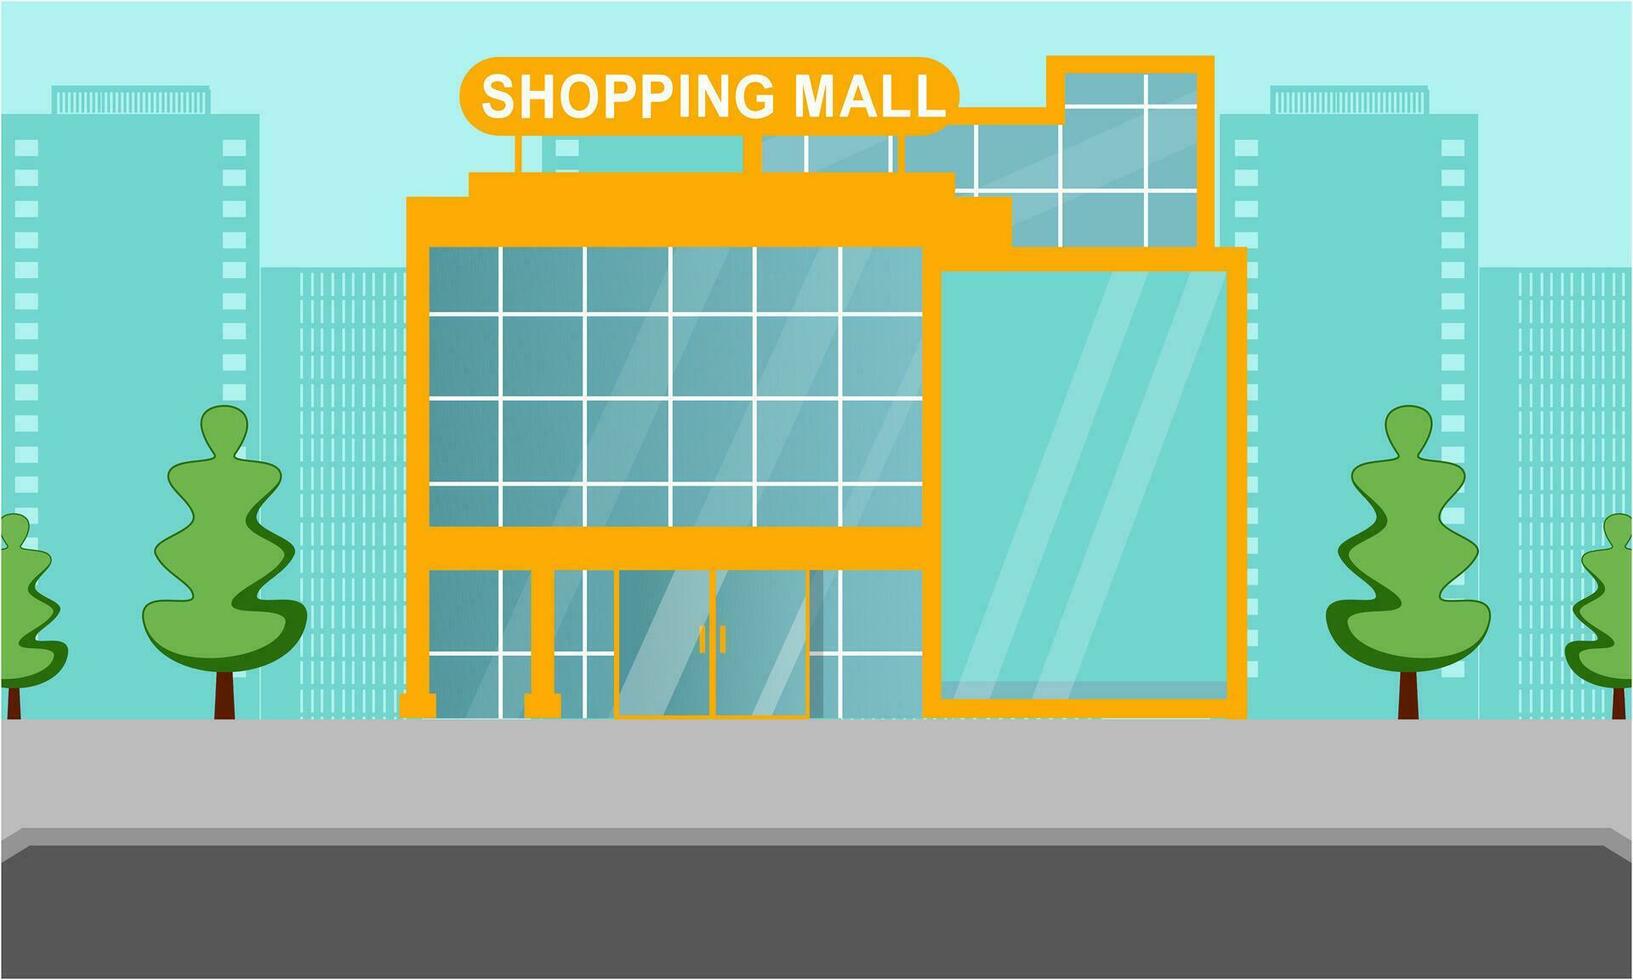 Einkaufen Einkaufszentrum draußen Komposition Einkaufszentrum Gebäude Illustration vektor